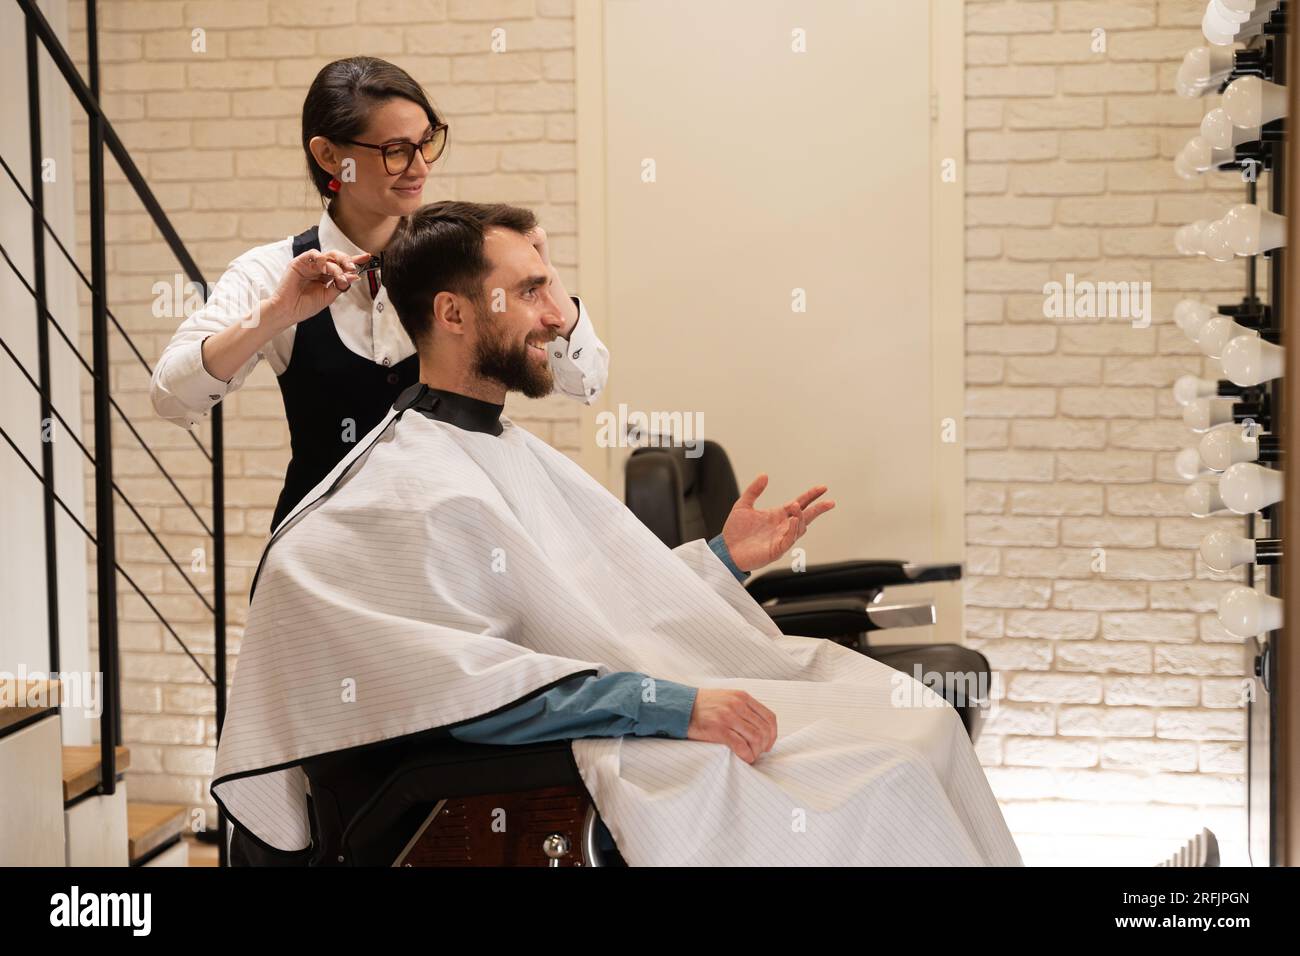 Client souriant assis dans un salon de coiffure dans une chaise de coiffure, une femme lui fait une coupe de cheveux avec des ciseaux Banque D'Images